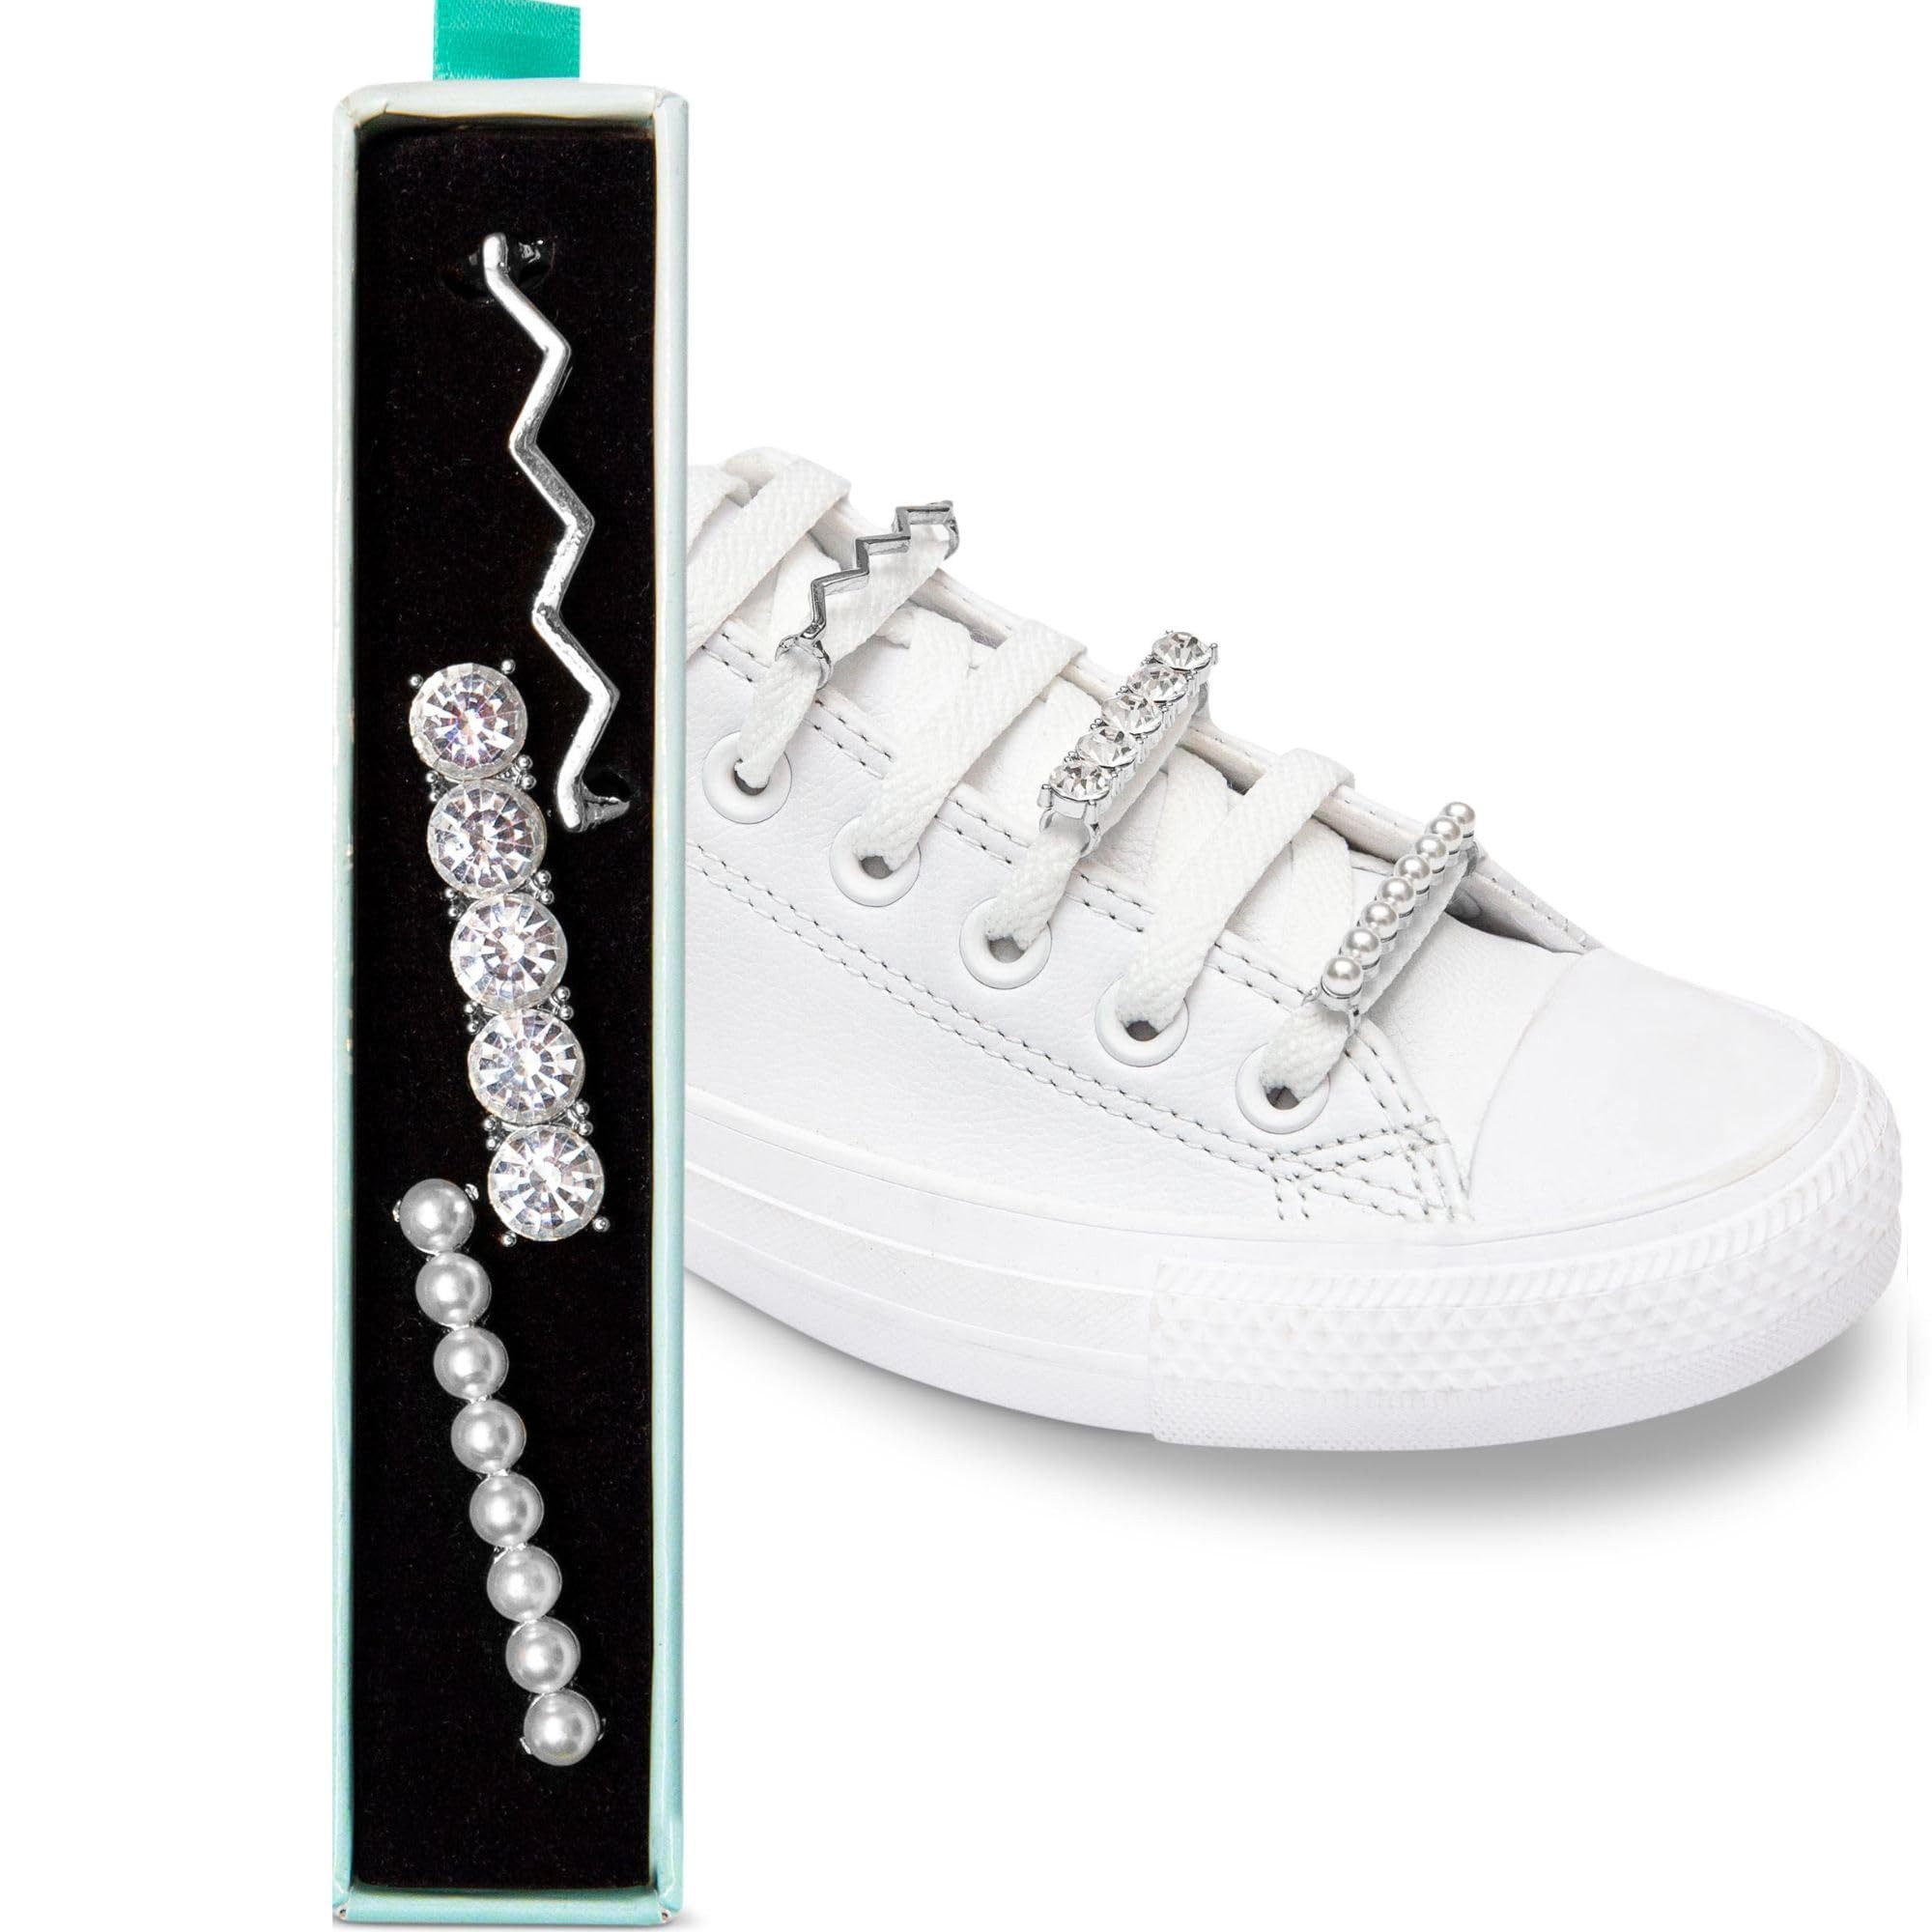 leazy Schuhanstecker Schuhschmuck Sets für Sneakers & Freizeitschuhe Schuh Schmuck Clips, Schnürsenkel Charms mit Perlen, Kristall & Strass